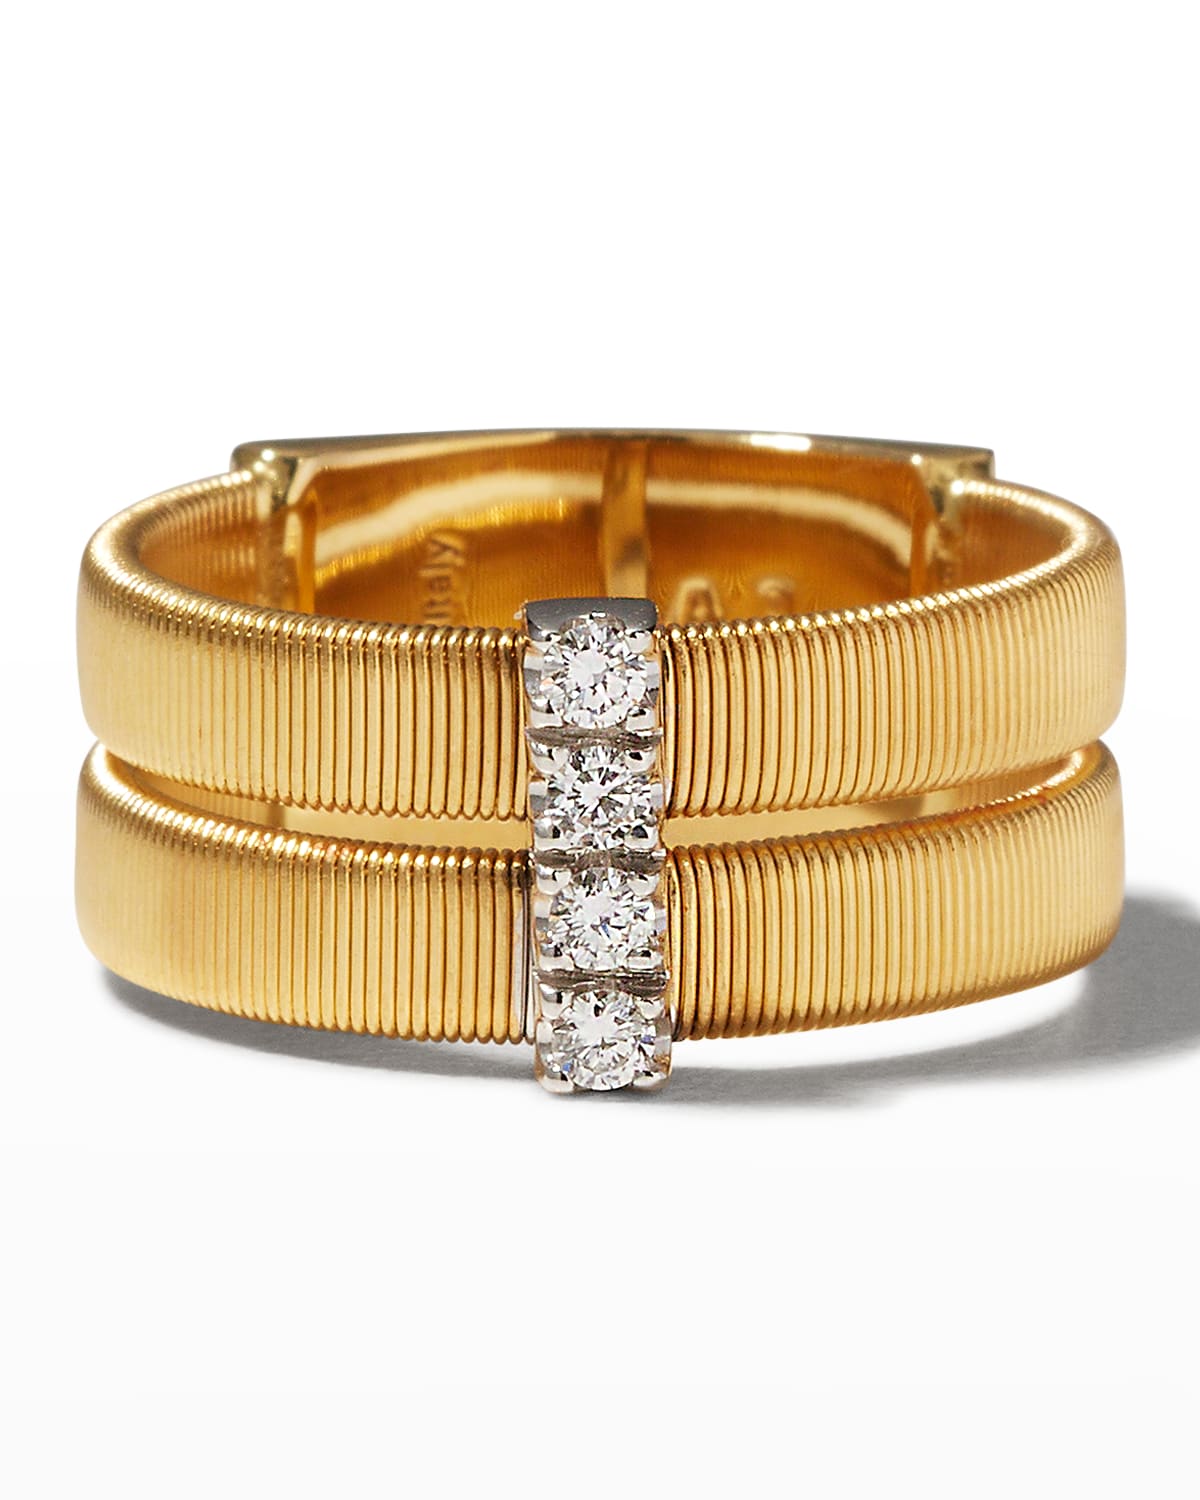 18K Gold Masai Double-Band Diamond Ring, Size 7